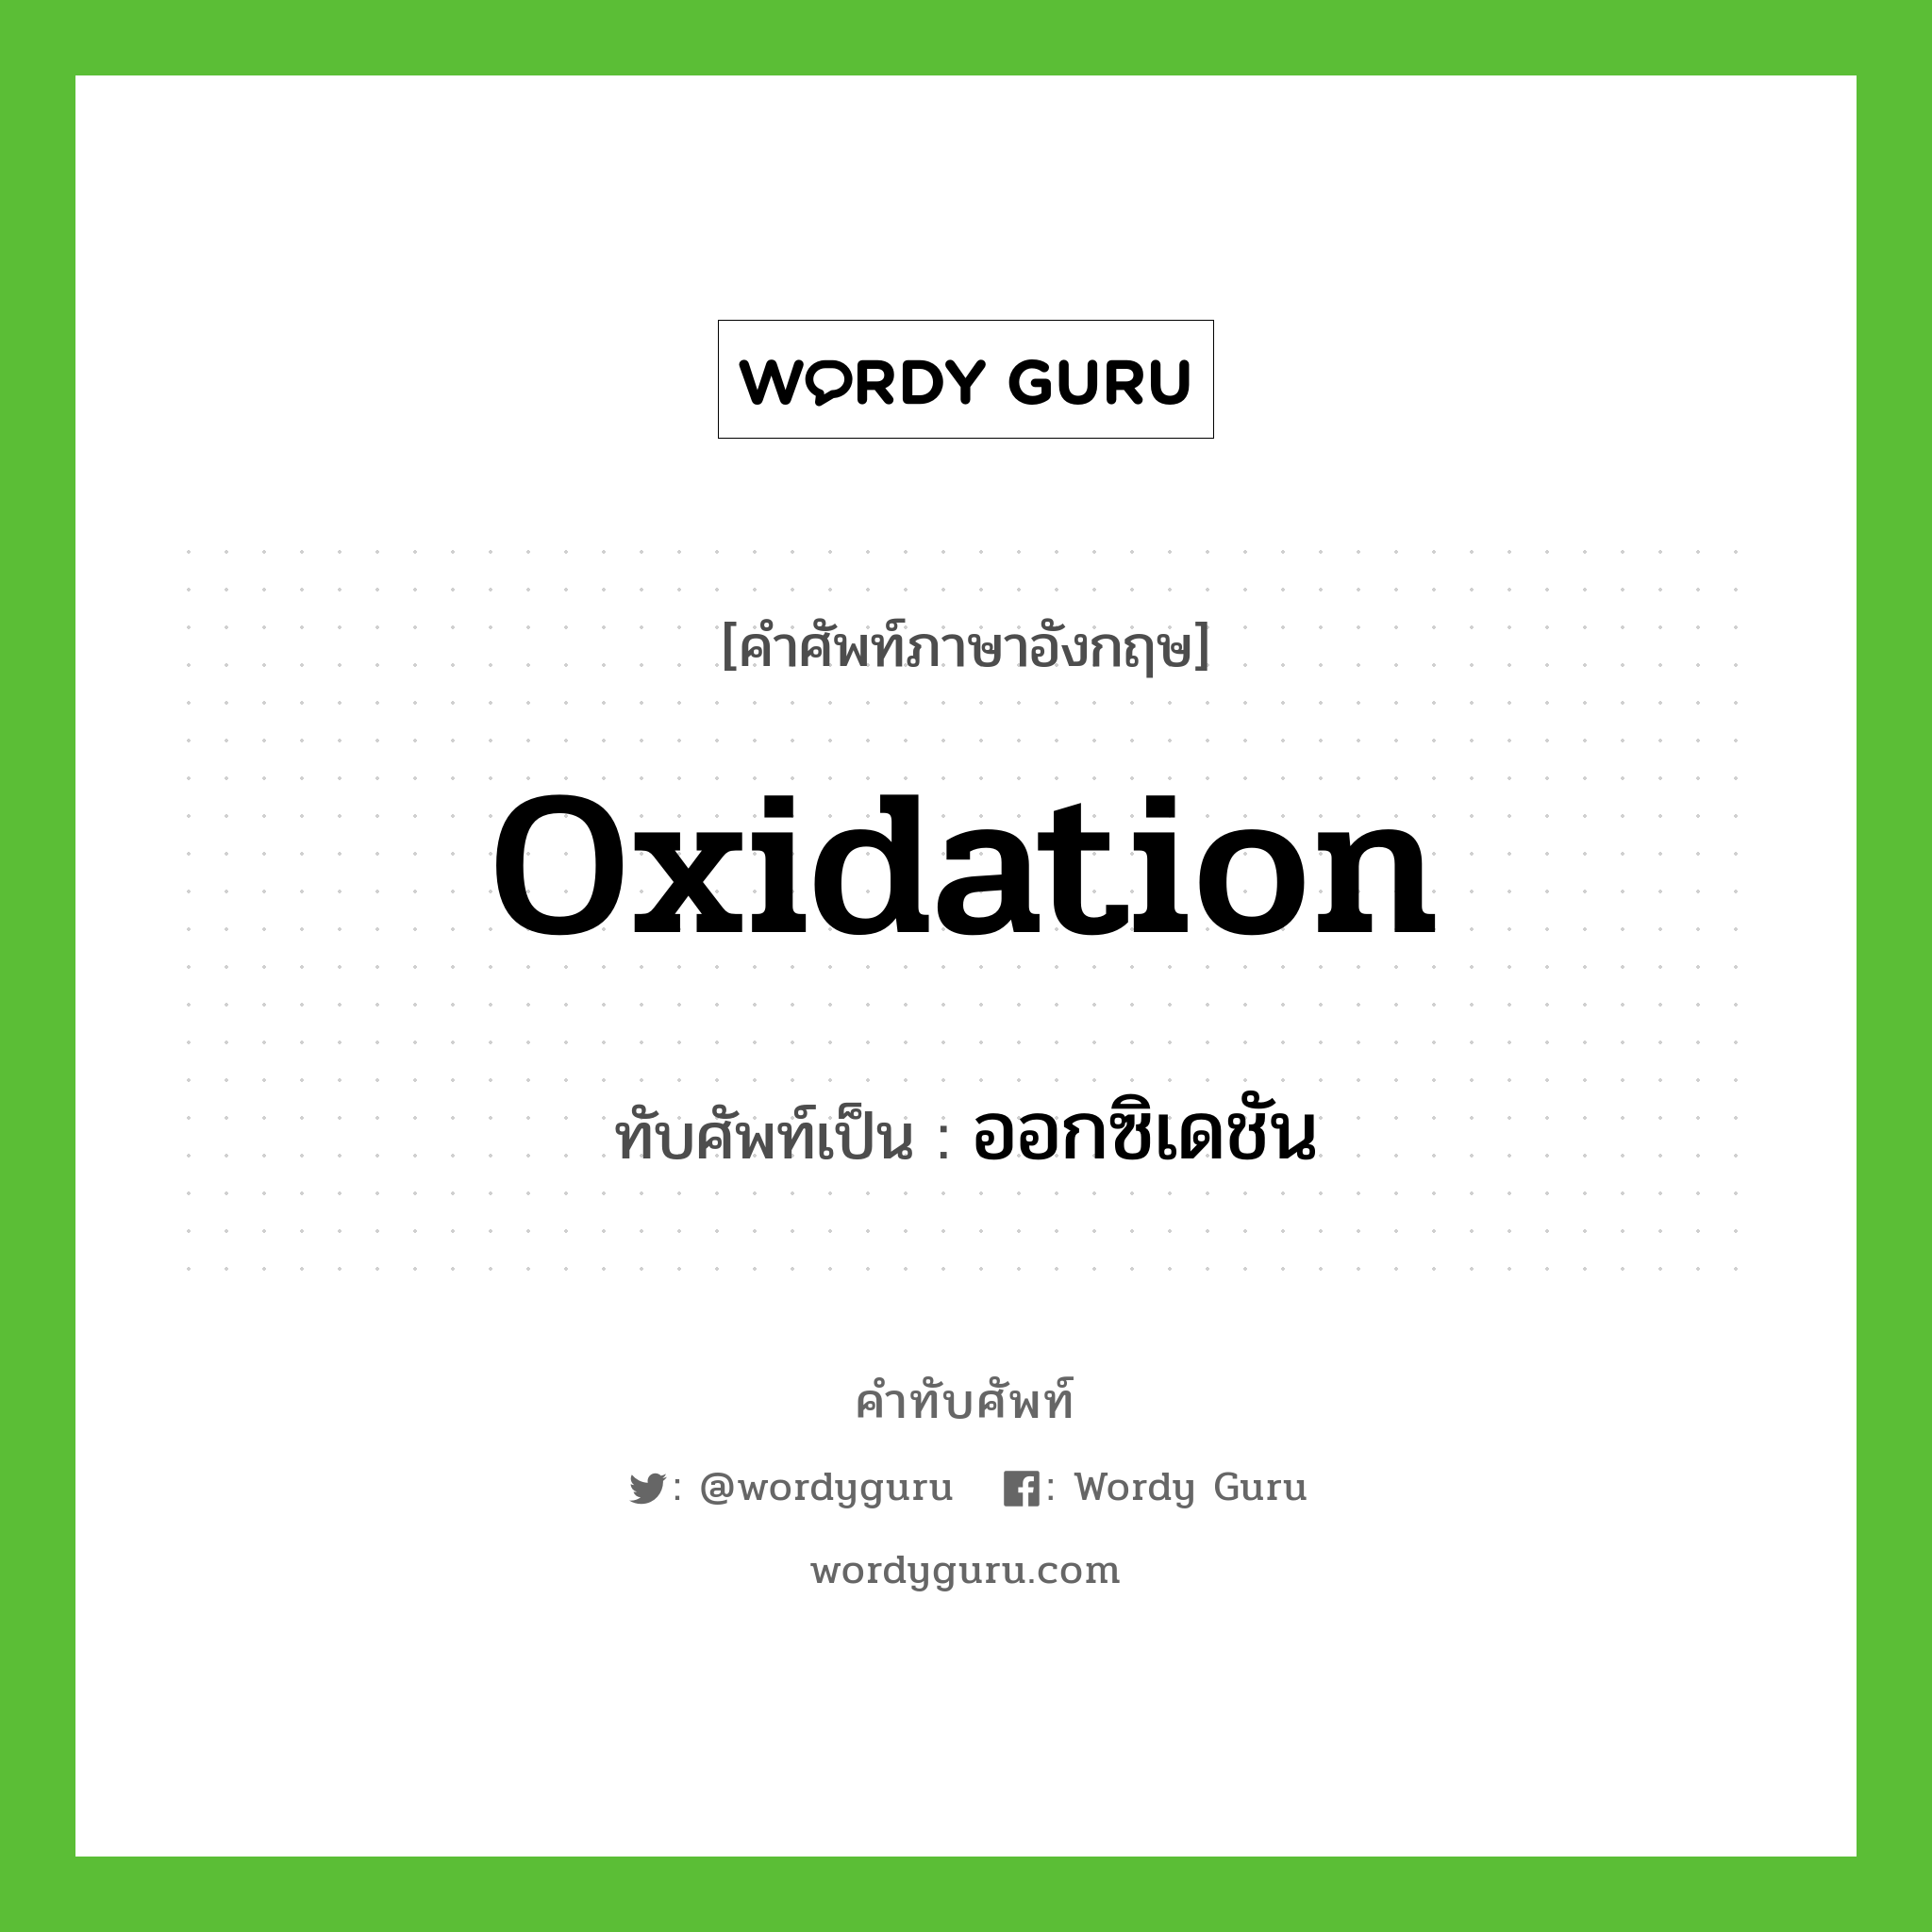 ออกซิเดชัน เขียนอย่างไร?, คำศัพท์ภาษาอังกฤษ ออกซิเดชัน ทับศัพท์เป็น oxidation